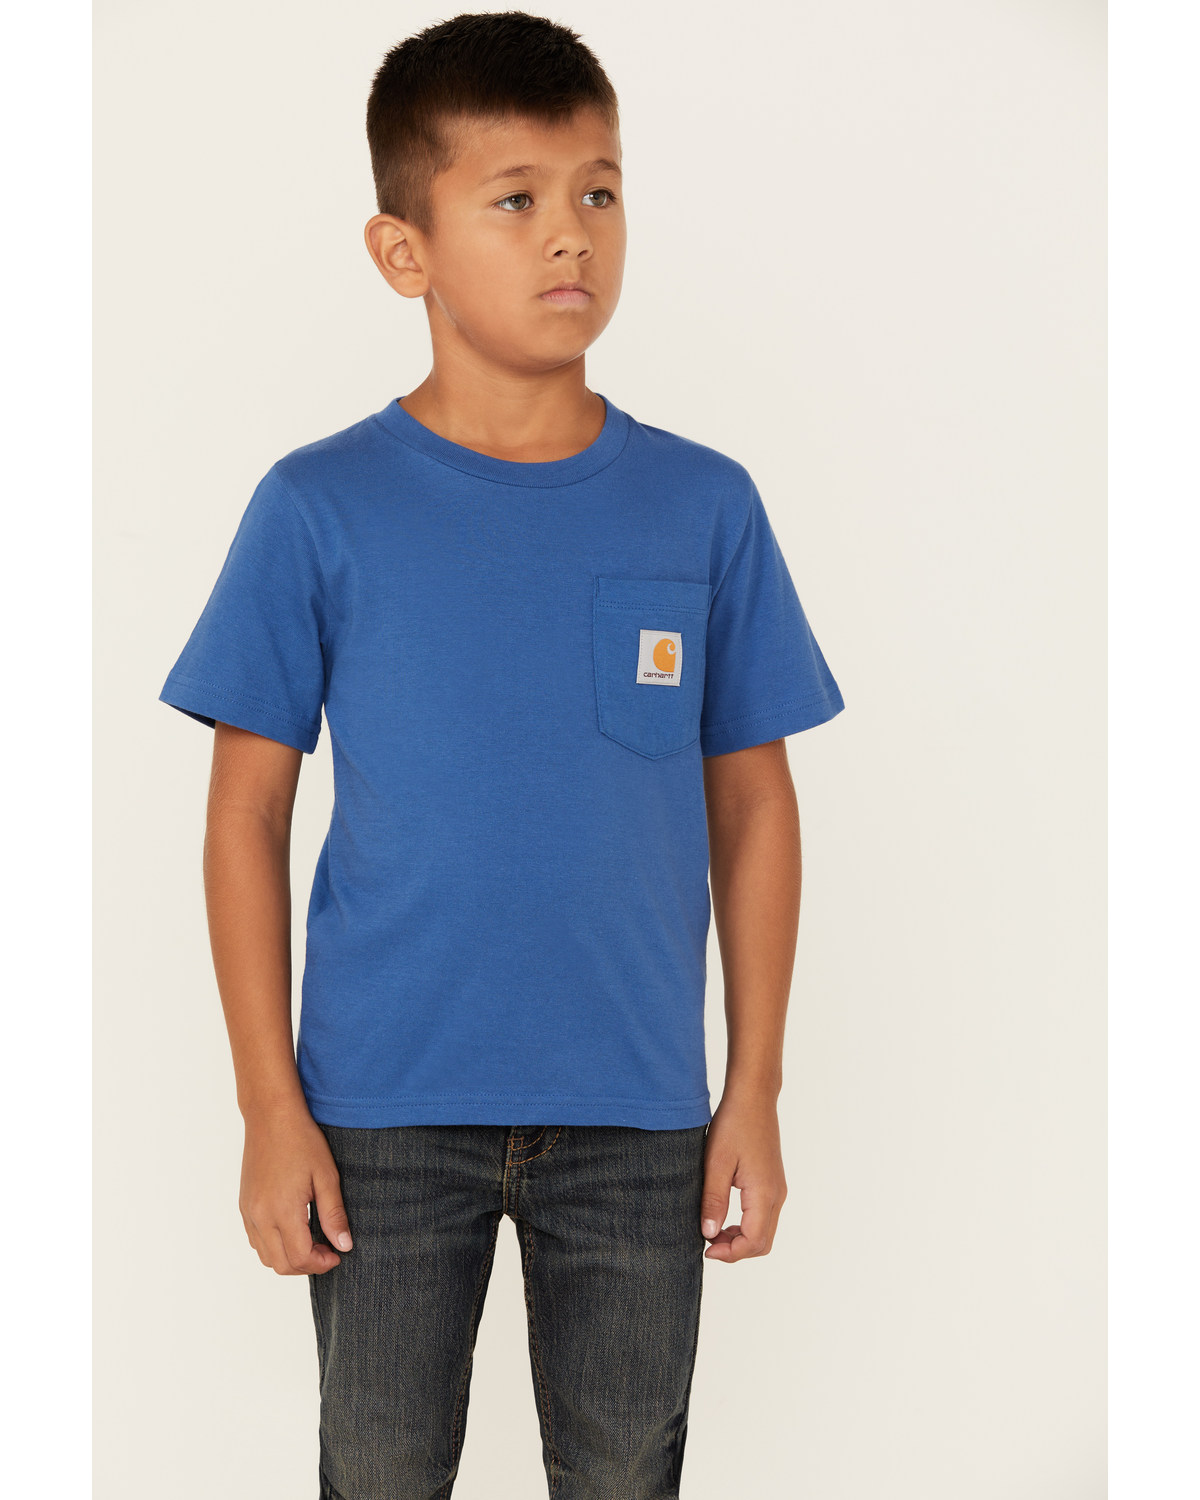 Carhartt Boys' Logo Pocket Short Sleeve T-Shirt